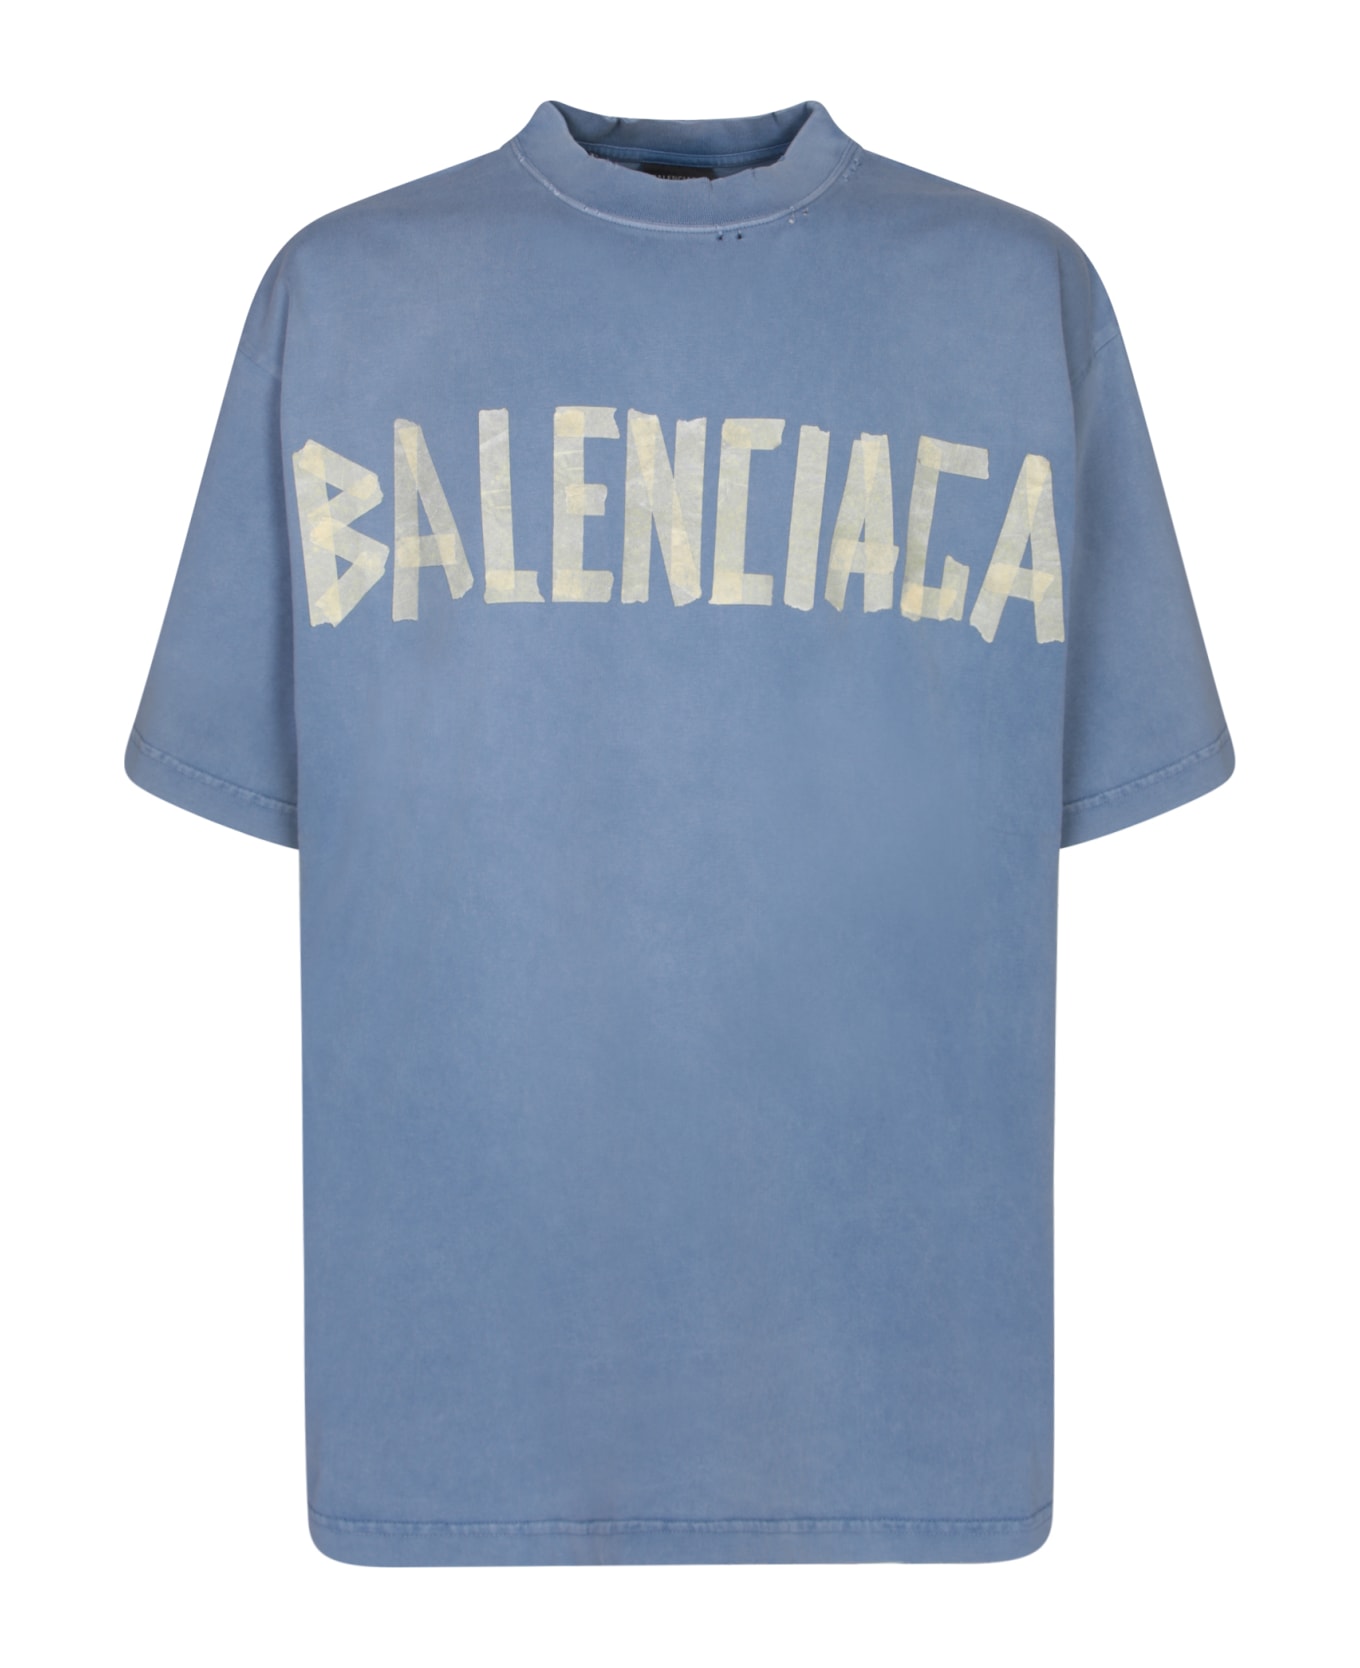 Balenciaga T-shirt - Blue